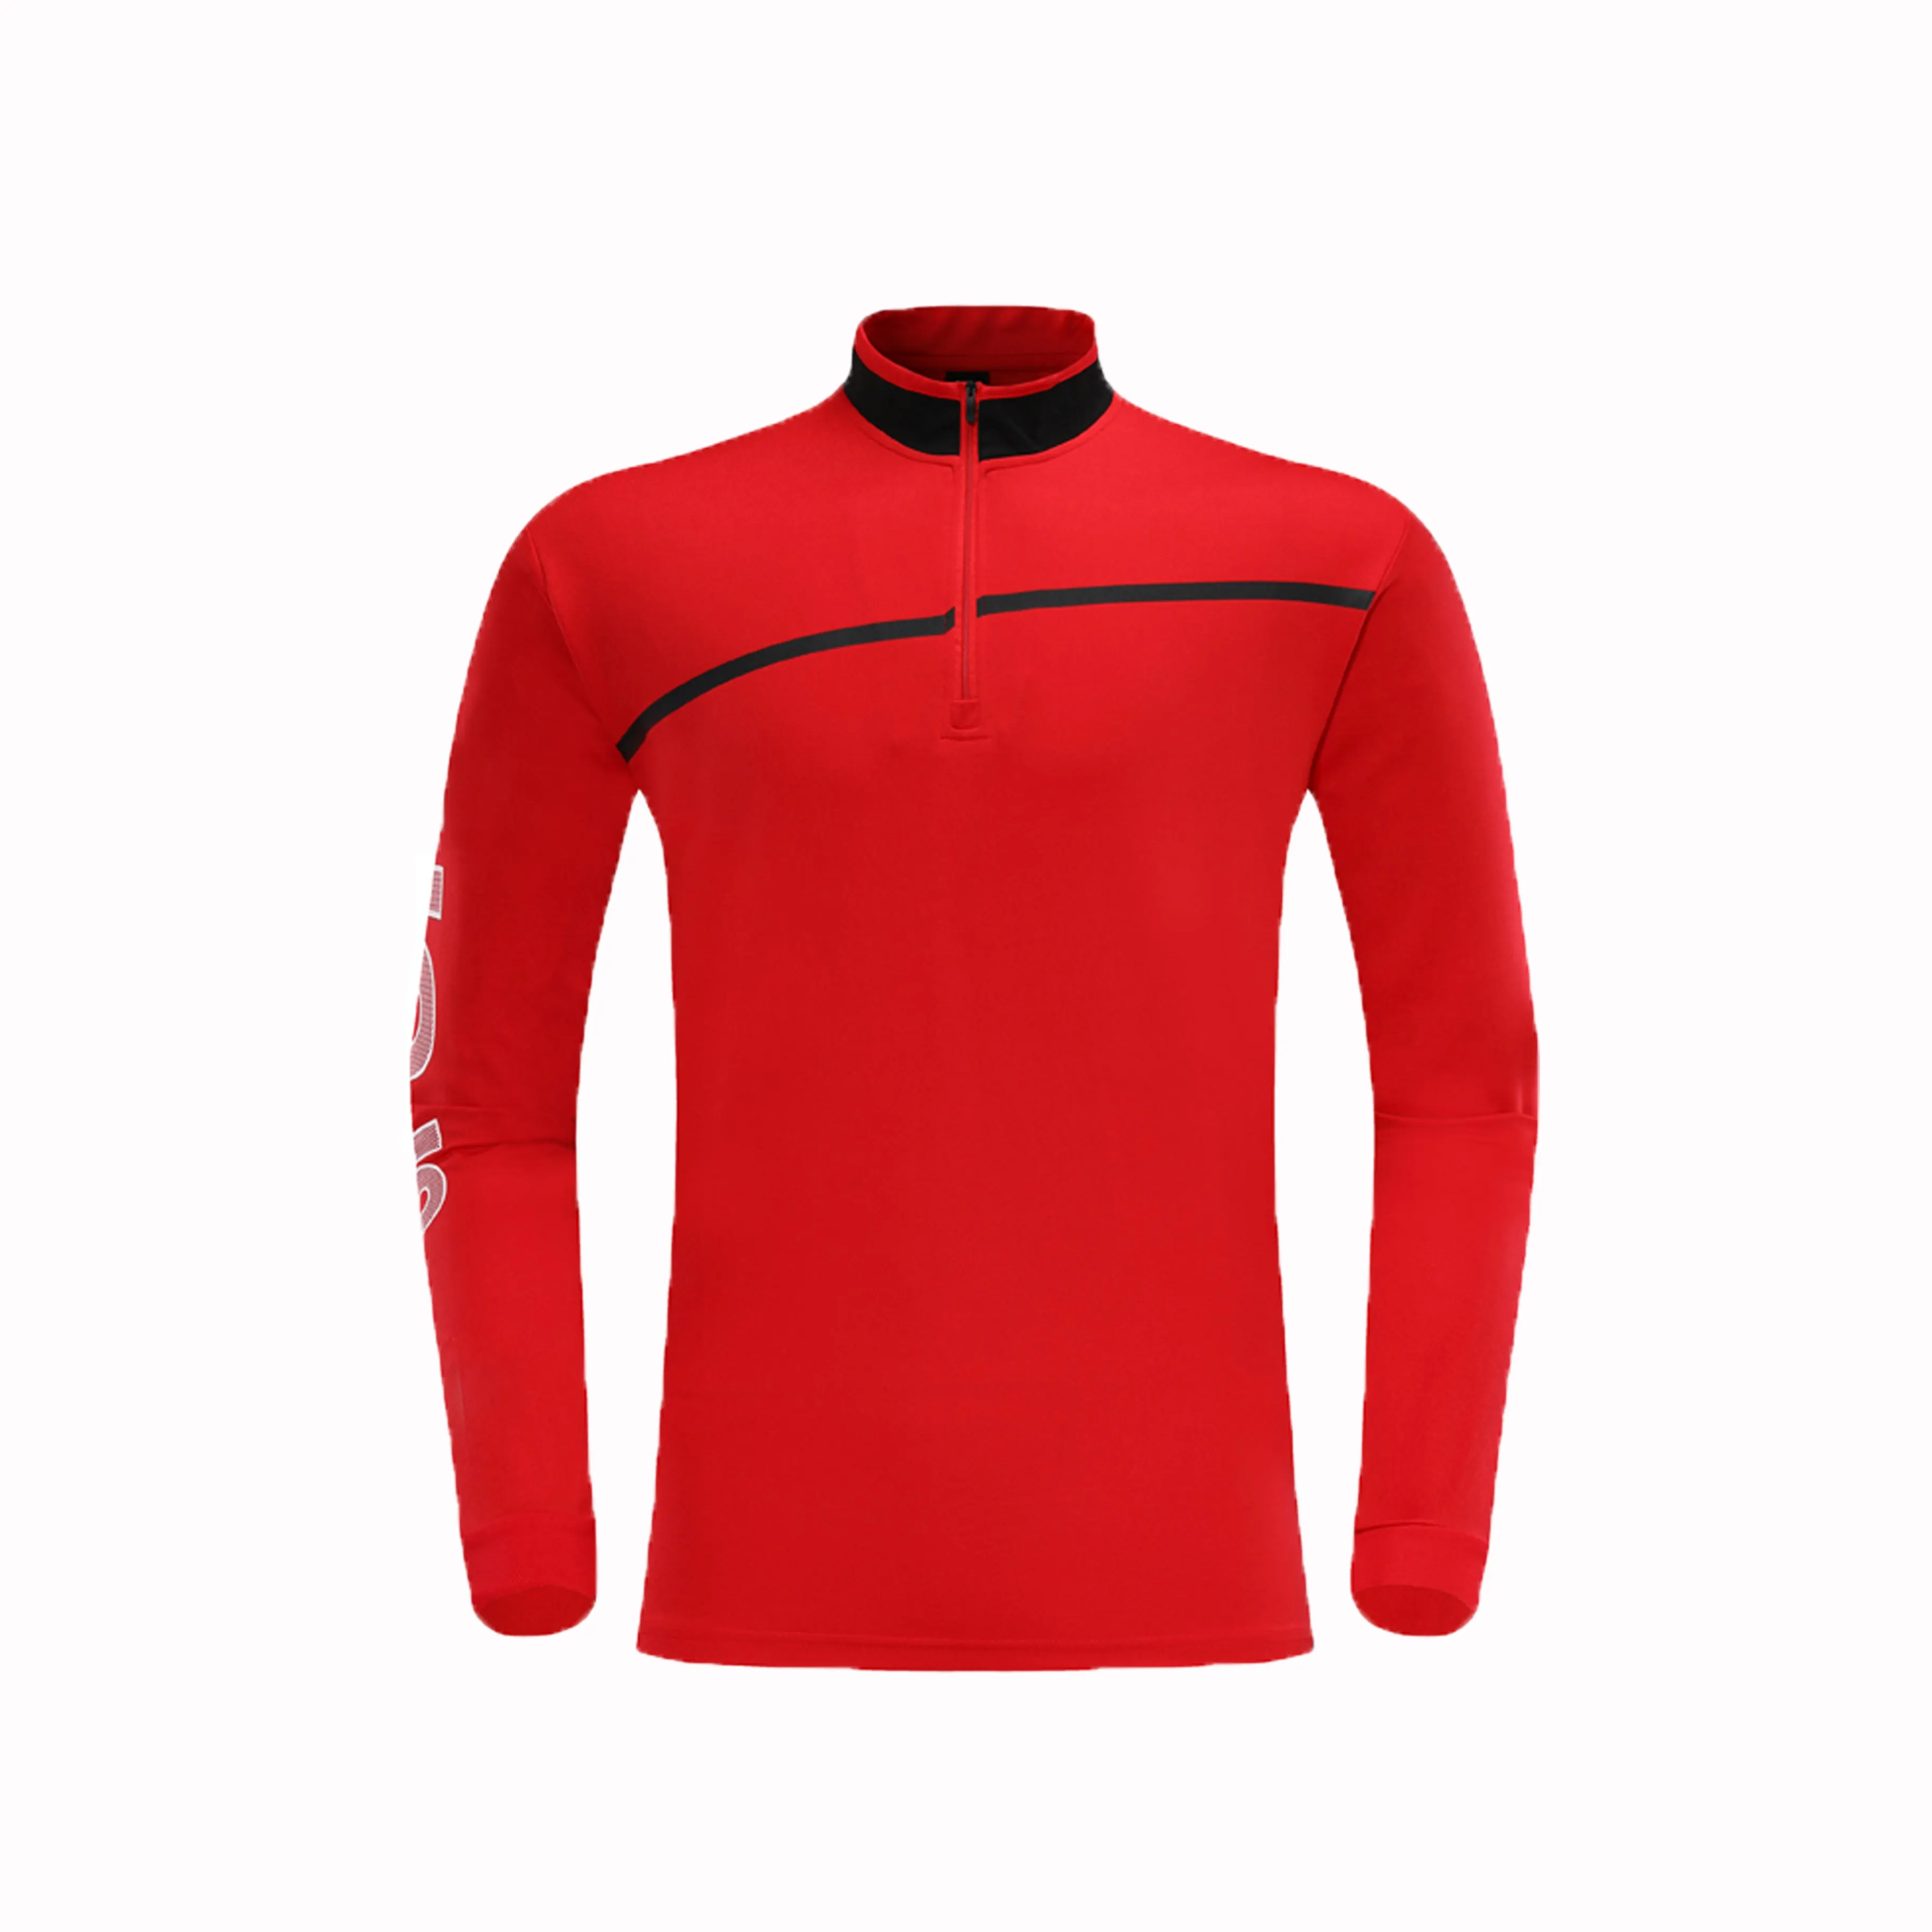 Design wholesale Jogging Suit Sports Wear Plain Training Suit for Women & Men Sweat Suite Men's Training & Jogging Wear